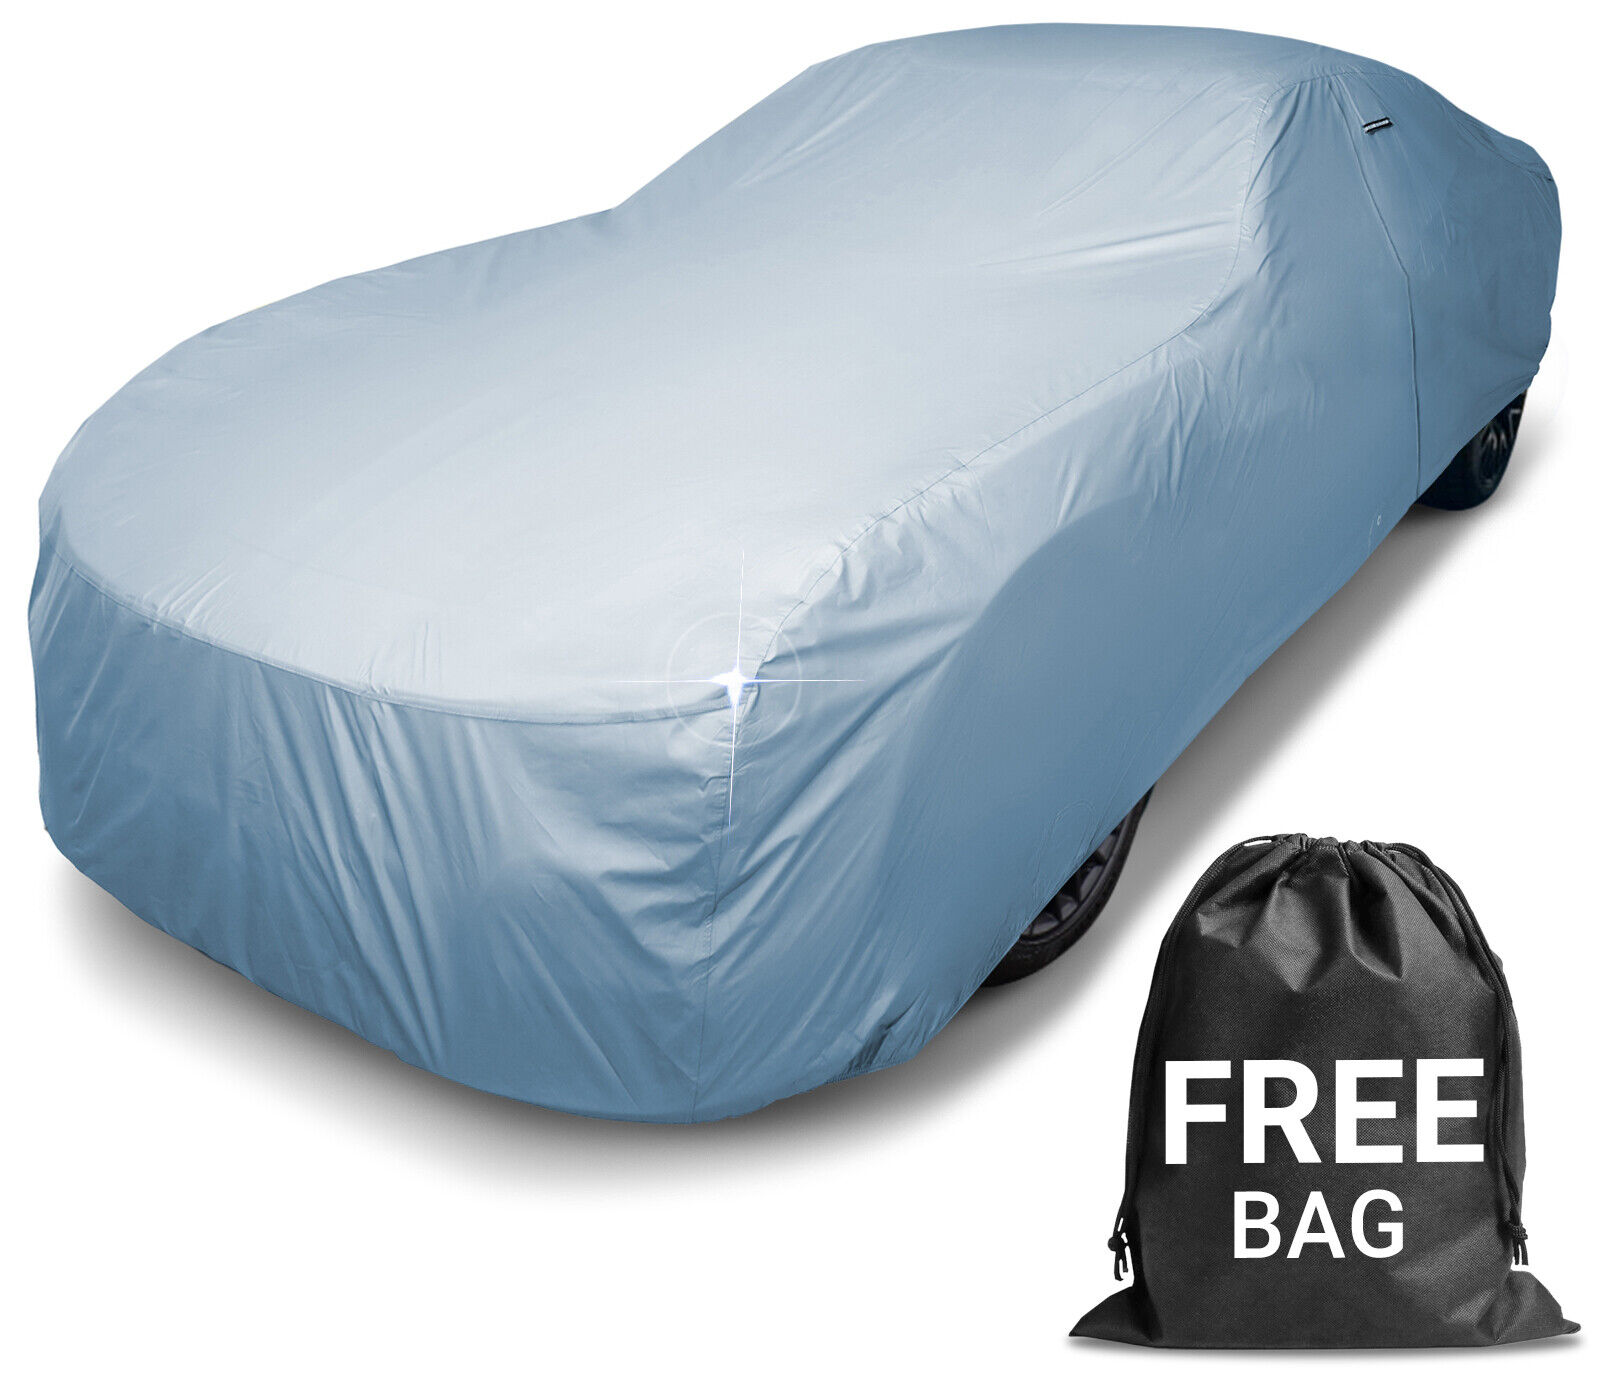 PACKARD [CAVALIER] Premium Custom-Fit Outdoor Waterproof Car Cover